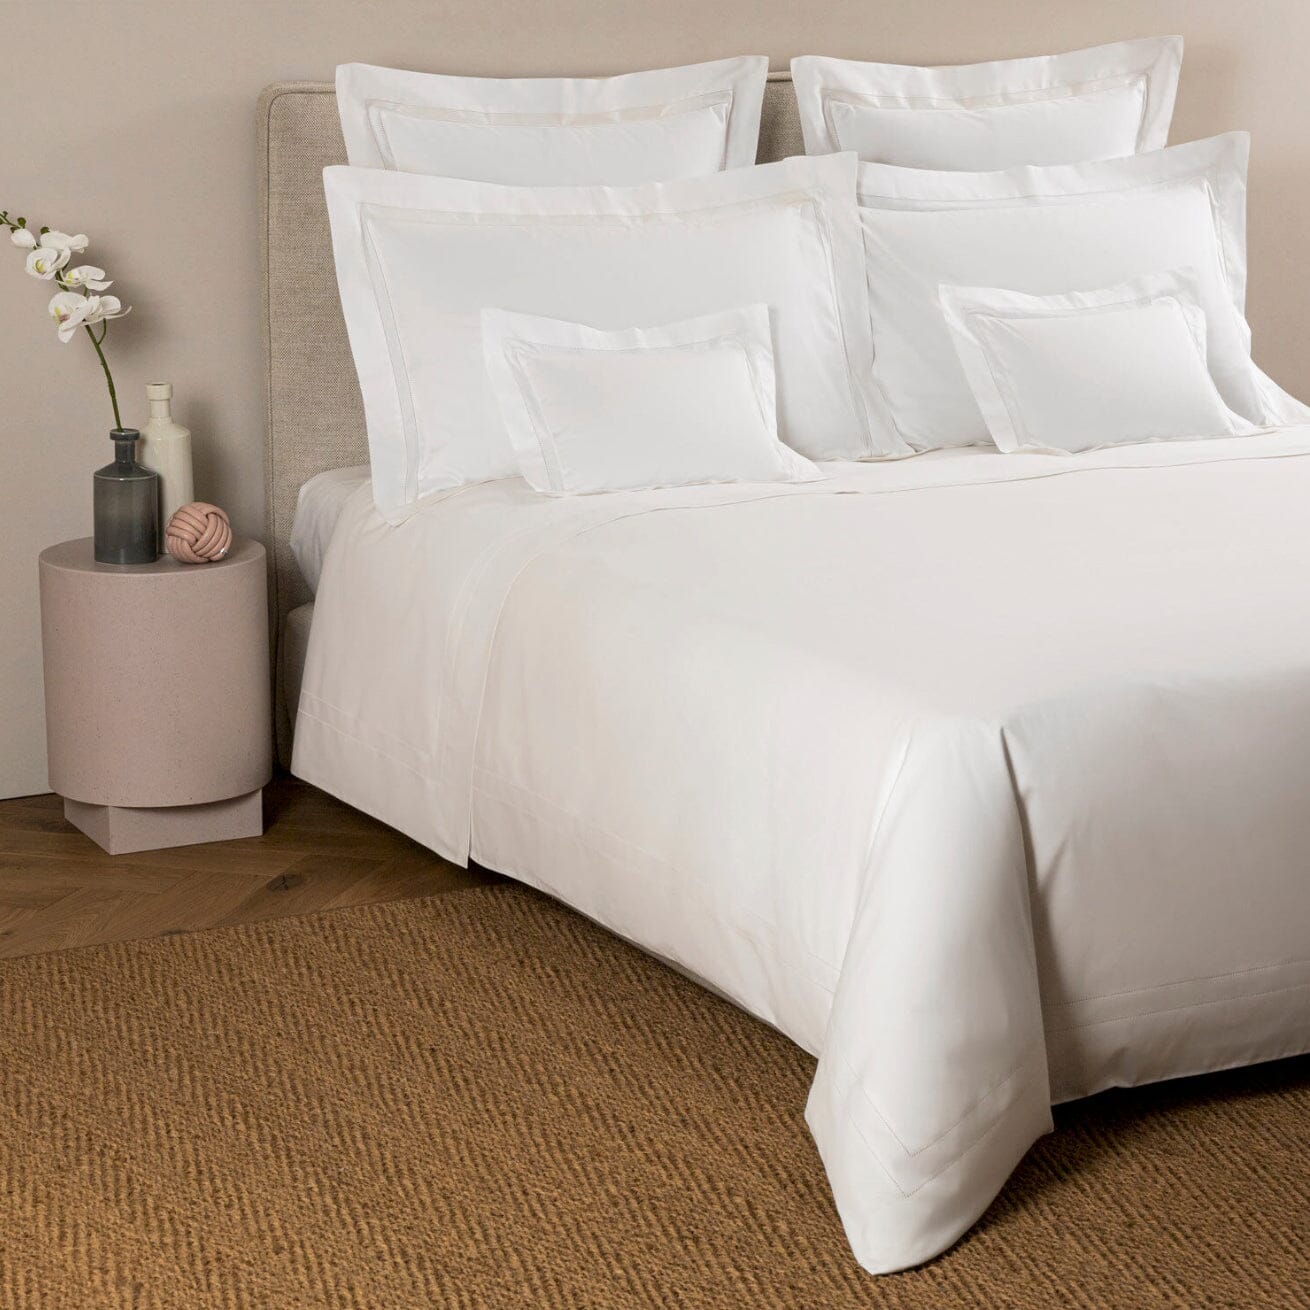 Frette Doppio Ajour Luxury Fine Linens Bedding in White - Fig Linens and Home